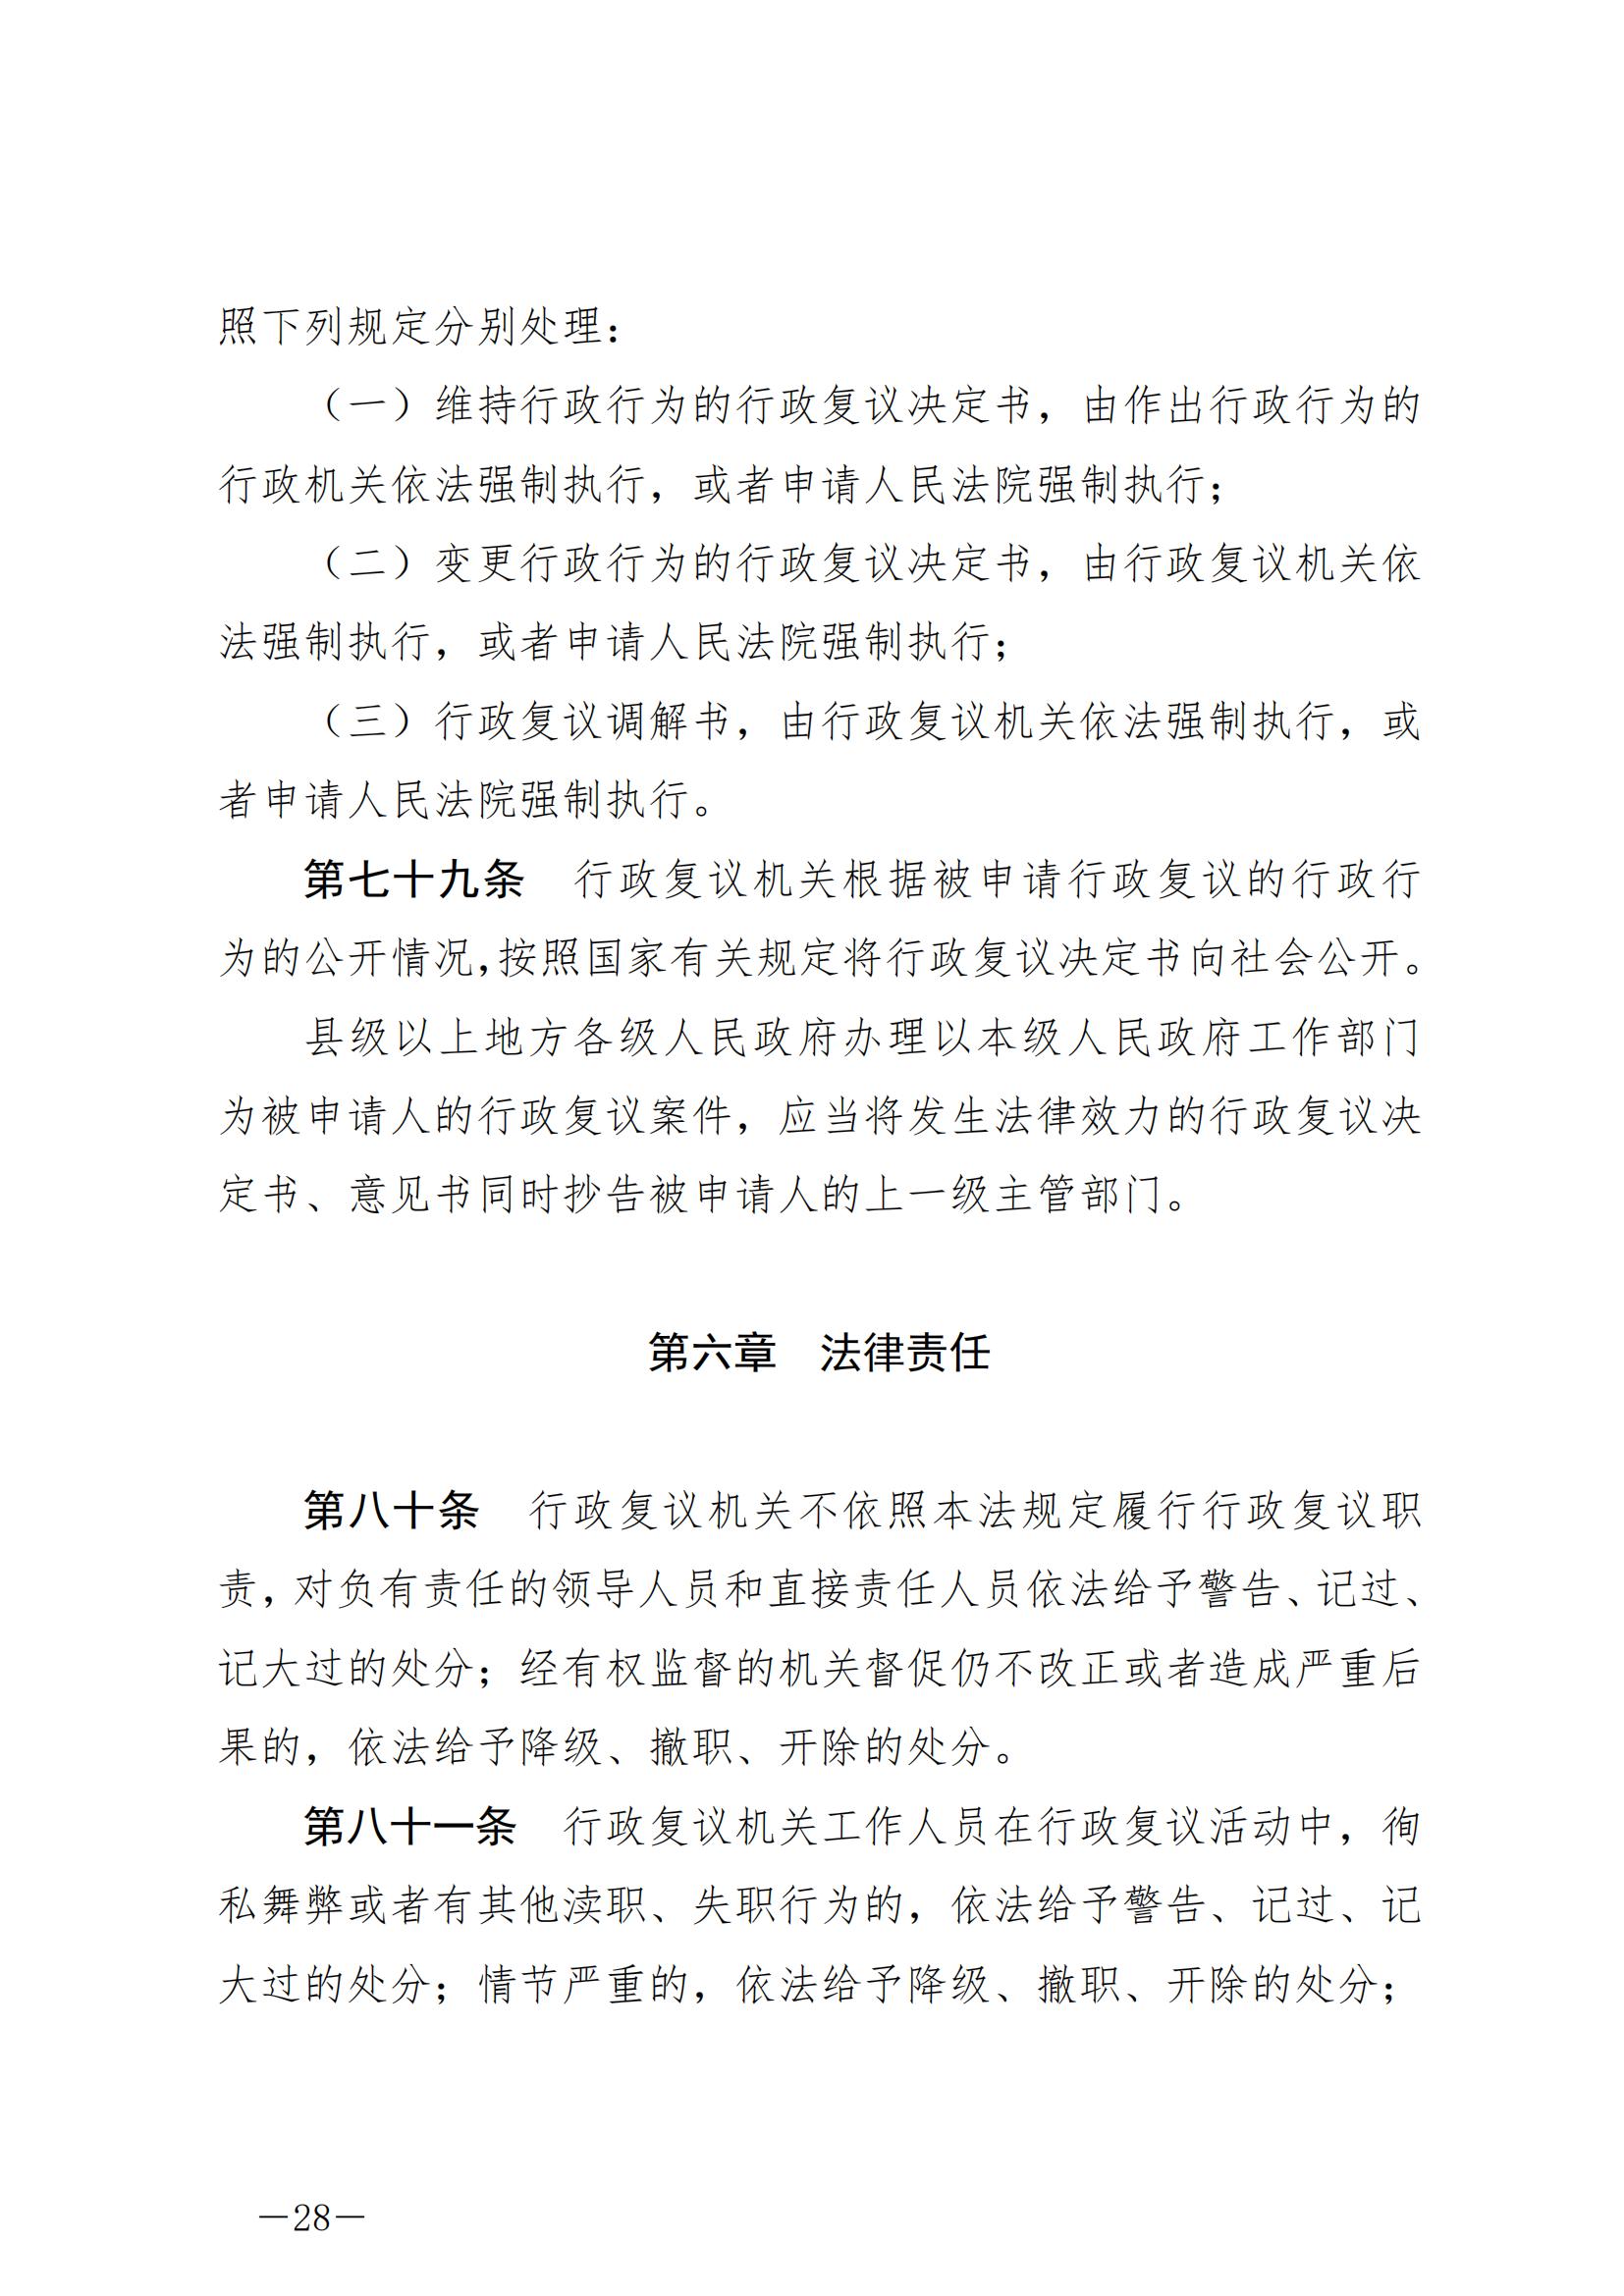 《中华人民共和国行政复议法》_20231204154310_27.jpg